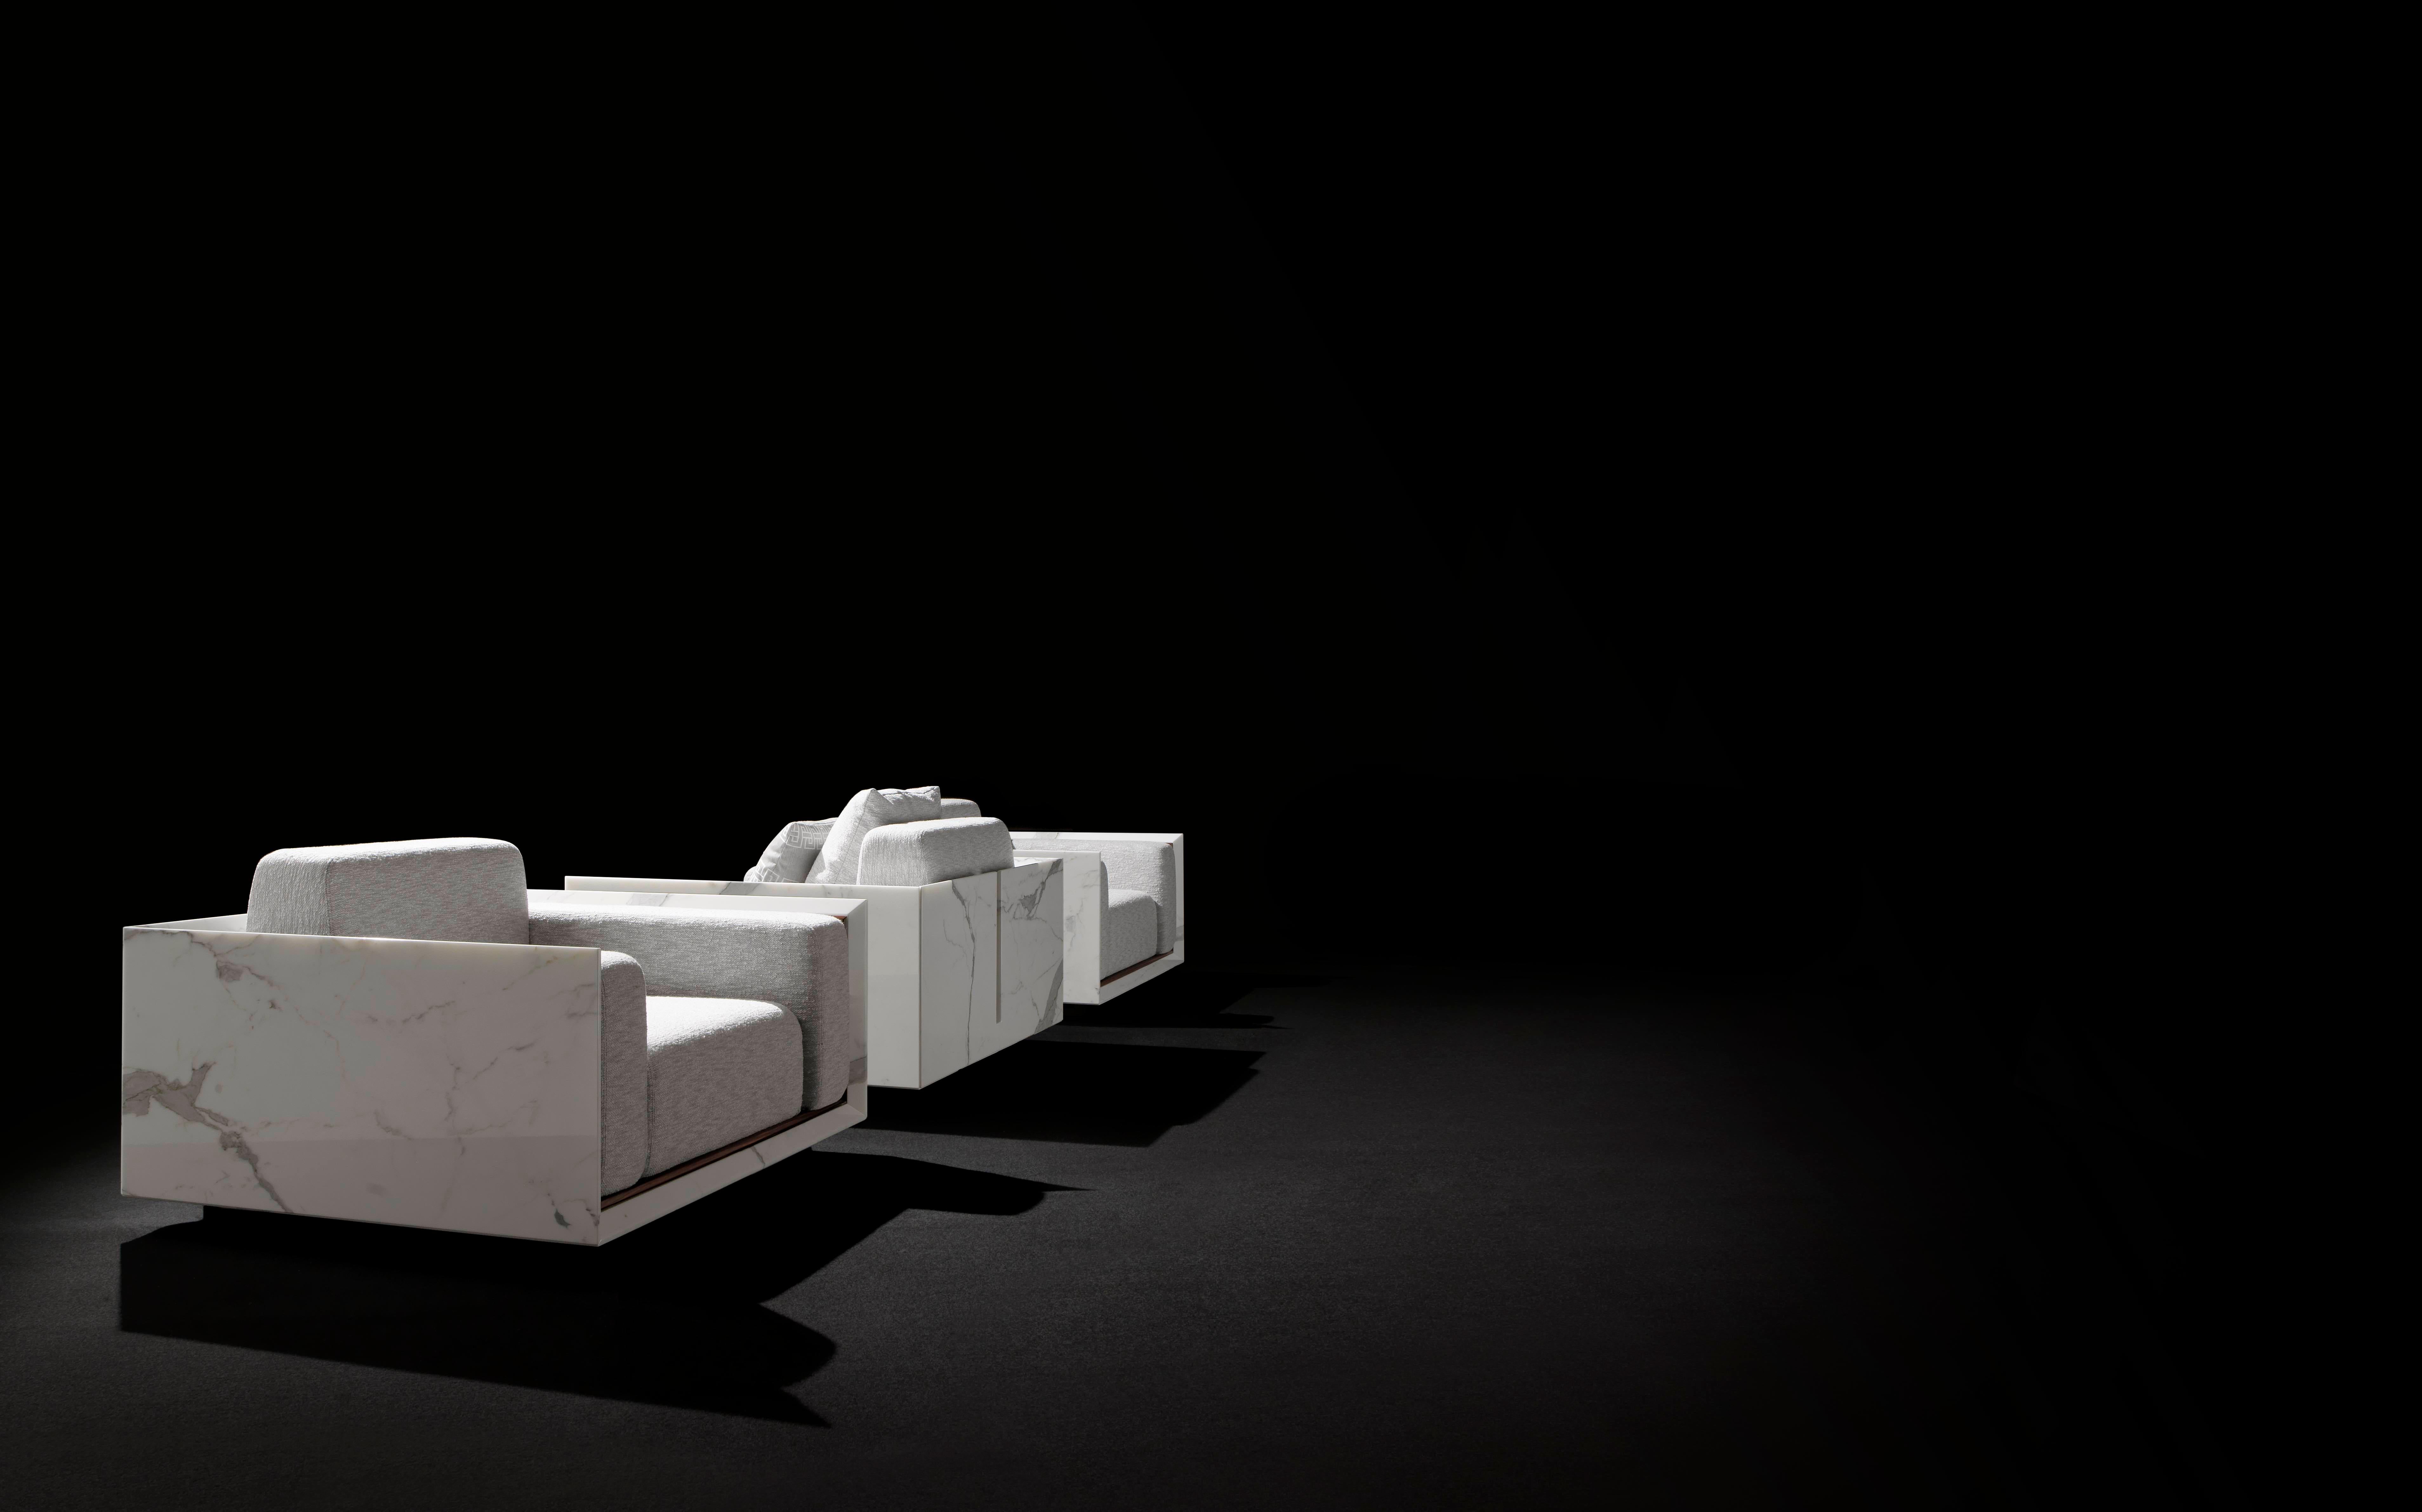 Kräftige Linien und umhüllende Formen. Die Idee von essentiellem Luxus in einem Sessel mit kühnem Format, aber mit minimalistischem und schlankem Design. Eine Sammlung, in der sich geometrische Strenge mit Poesie paart. Die Linien sind essentiell